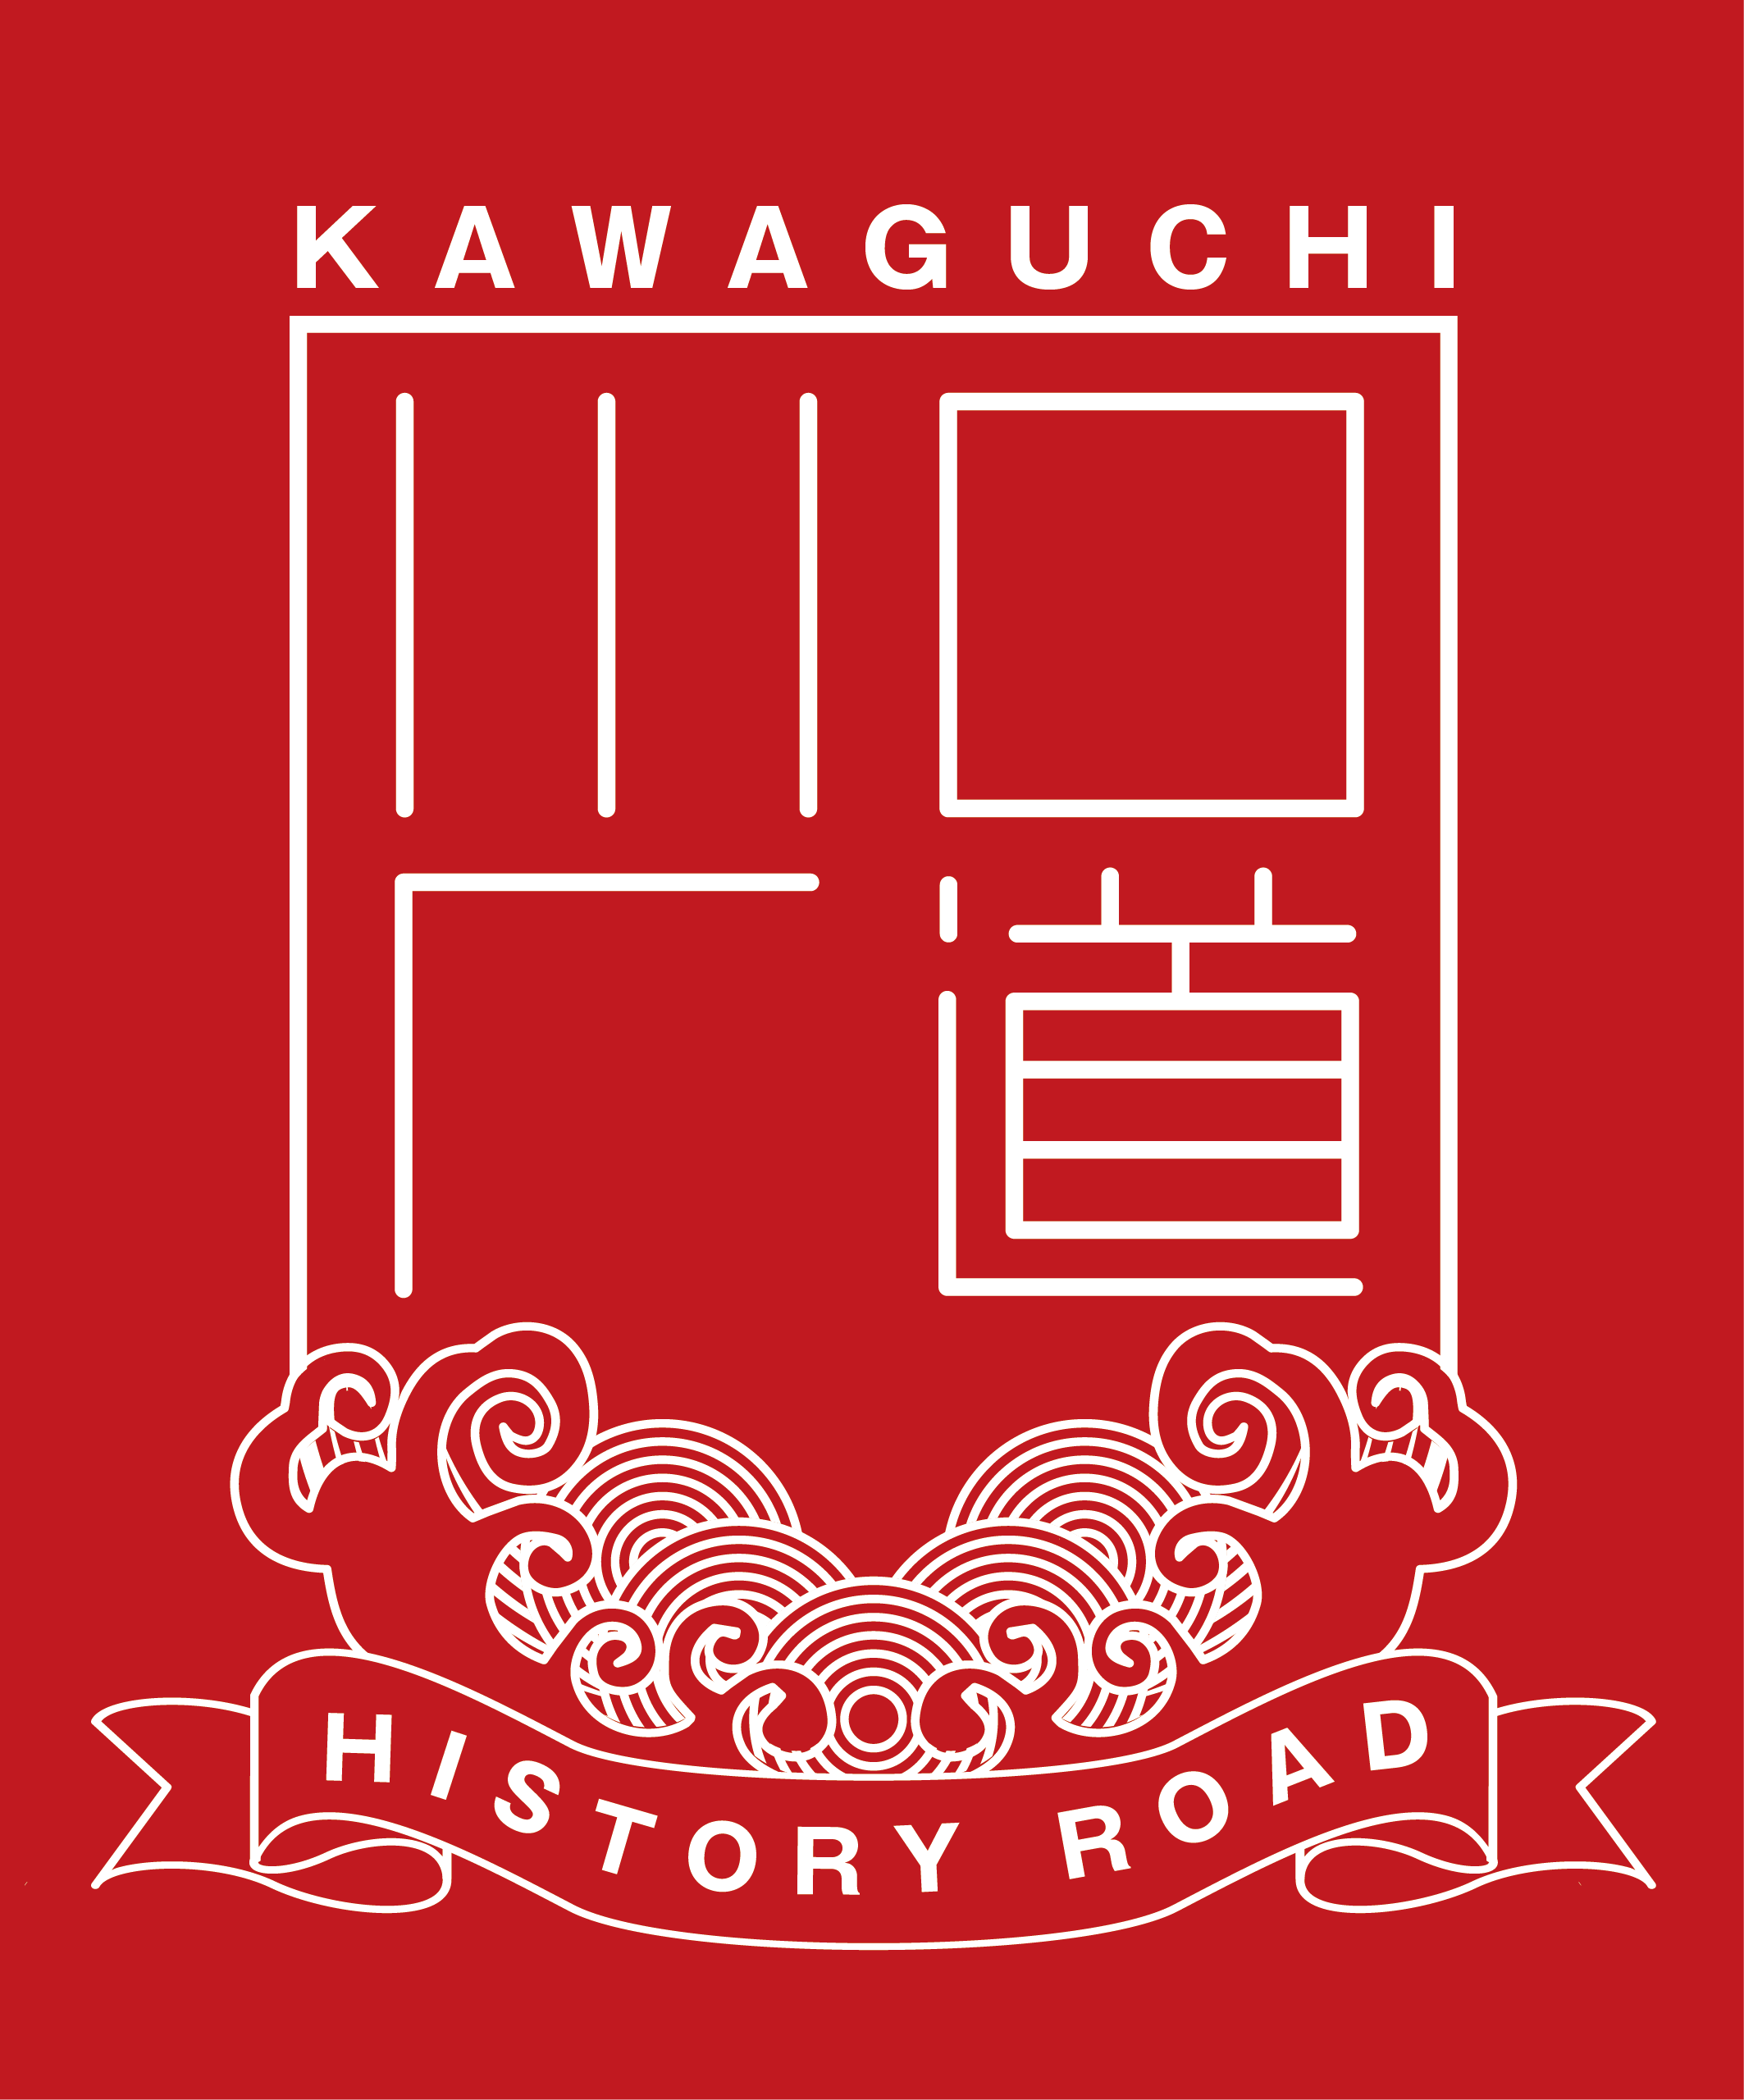 
川口歴道 - Kawaguchi History Road -
 